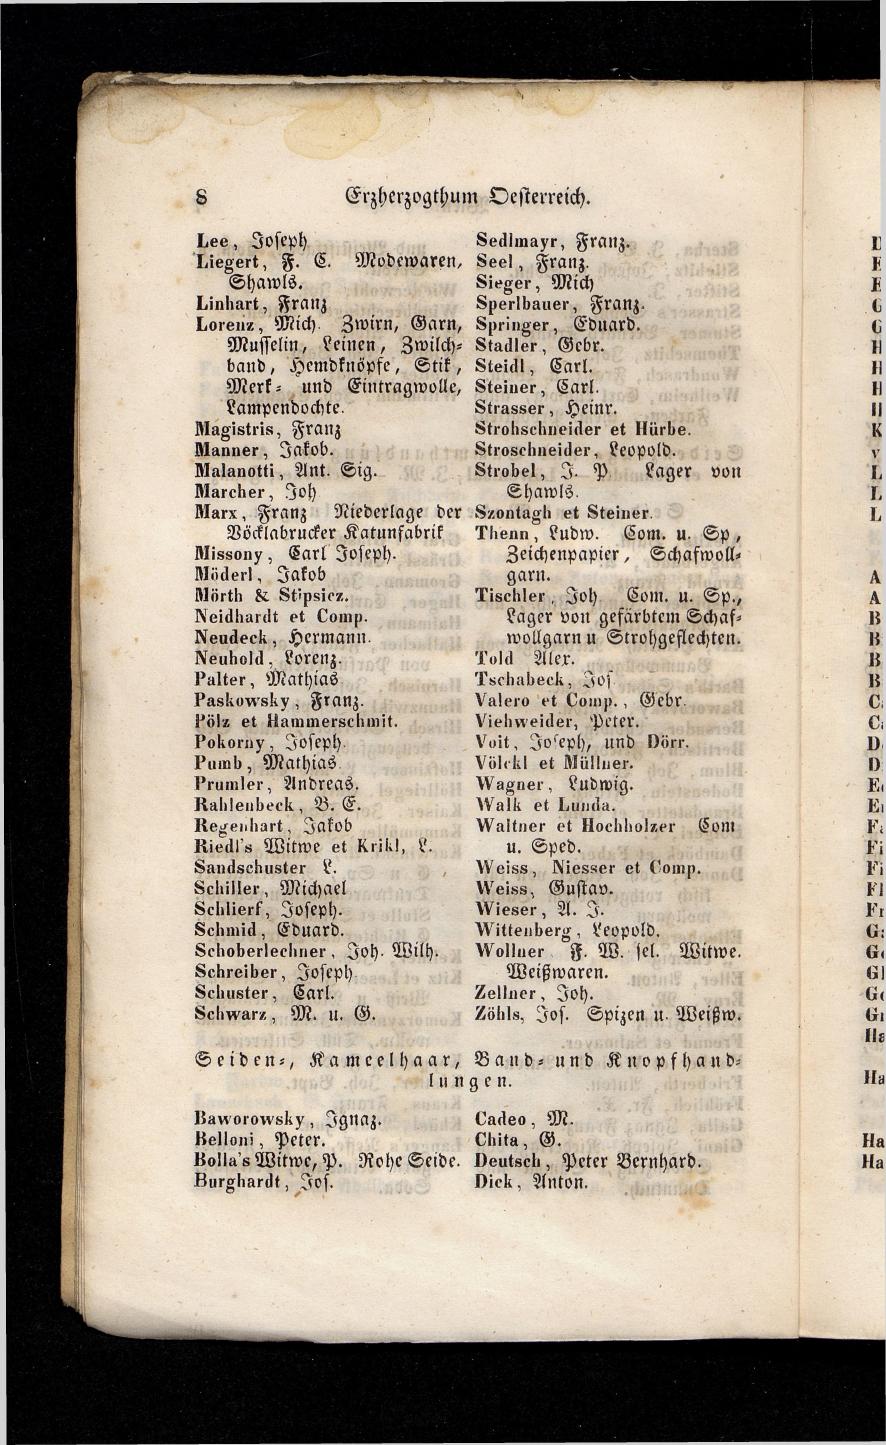 Grosses Adressbuch der Kaufleute. No. 13. Oesterreich ober u. unter der Enns 1844 - Seite 12